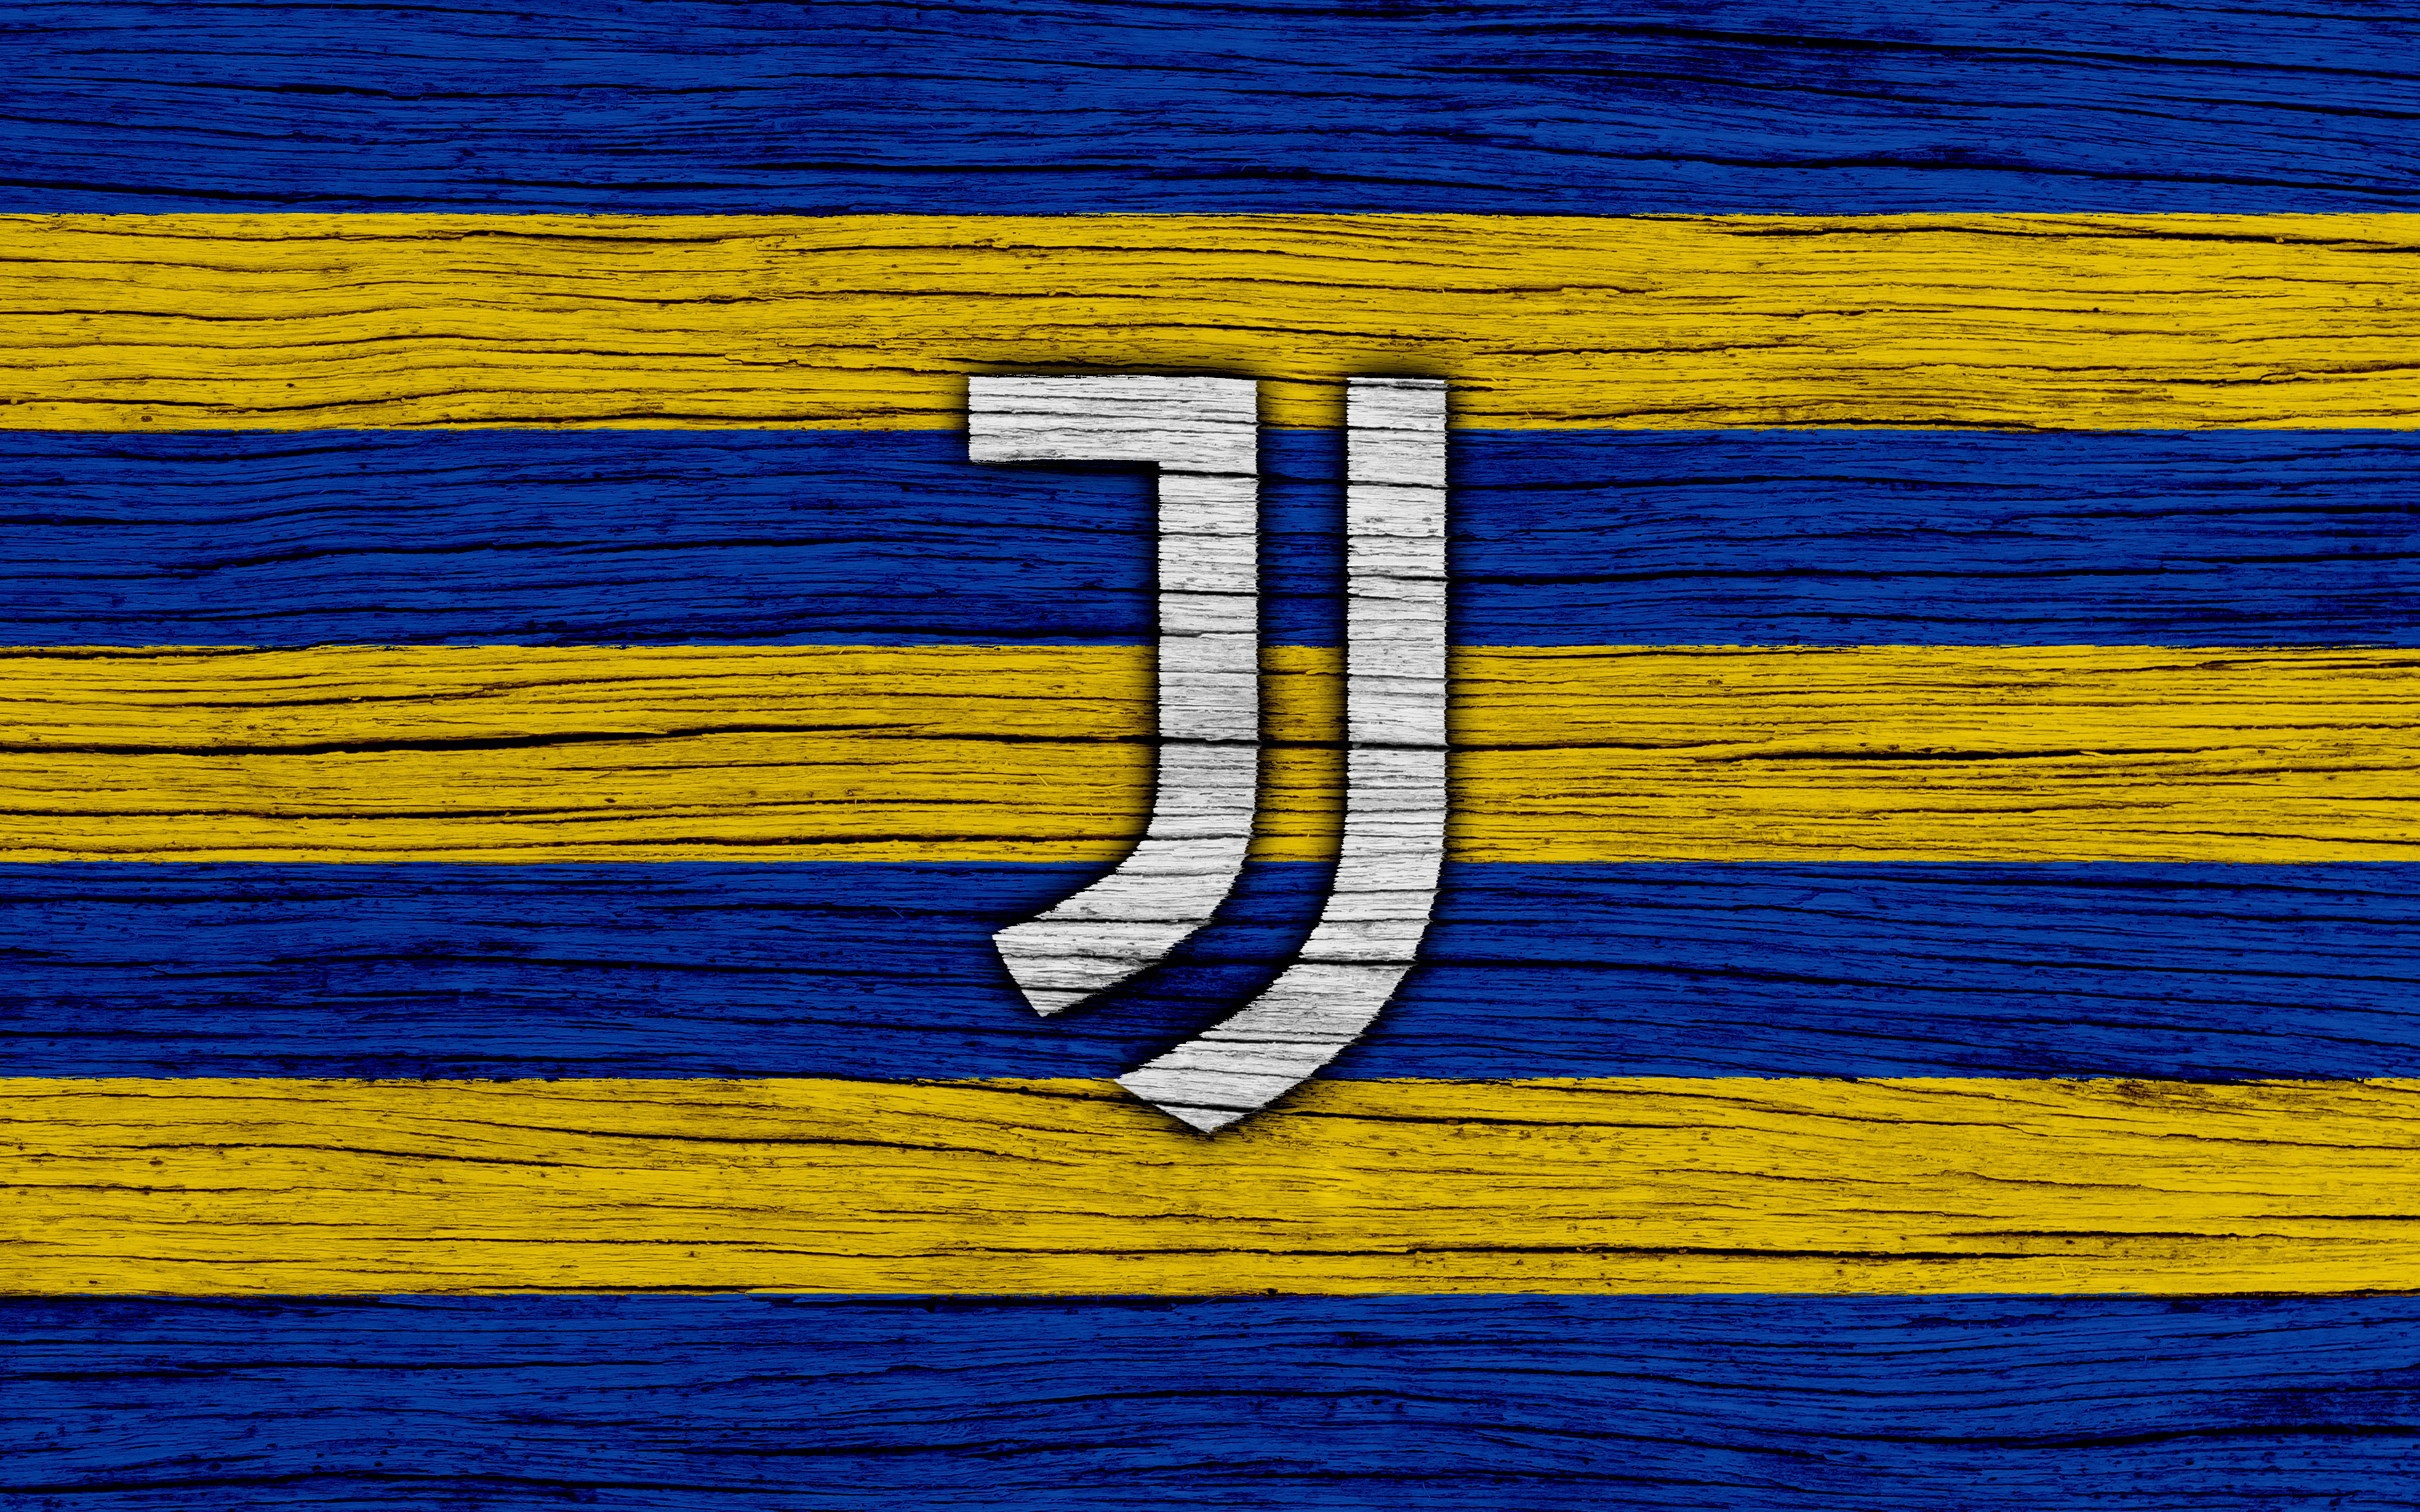 Juventus F C Logo Soccer 3840x2400